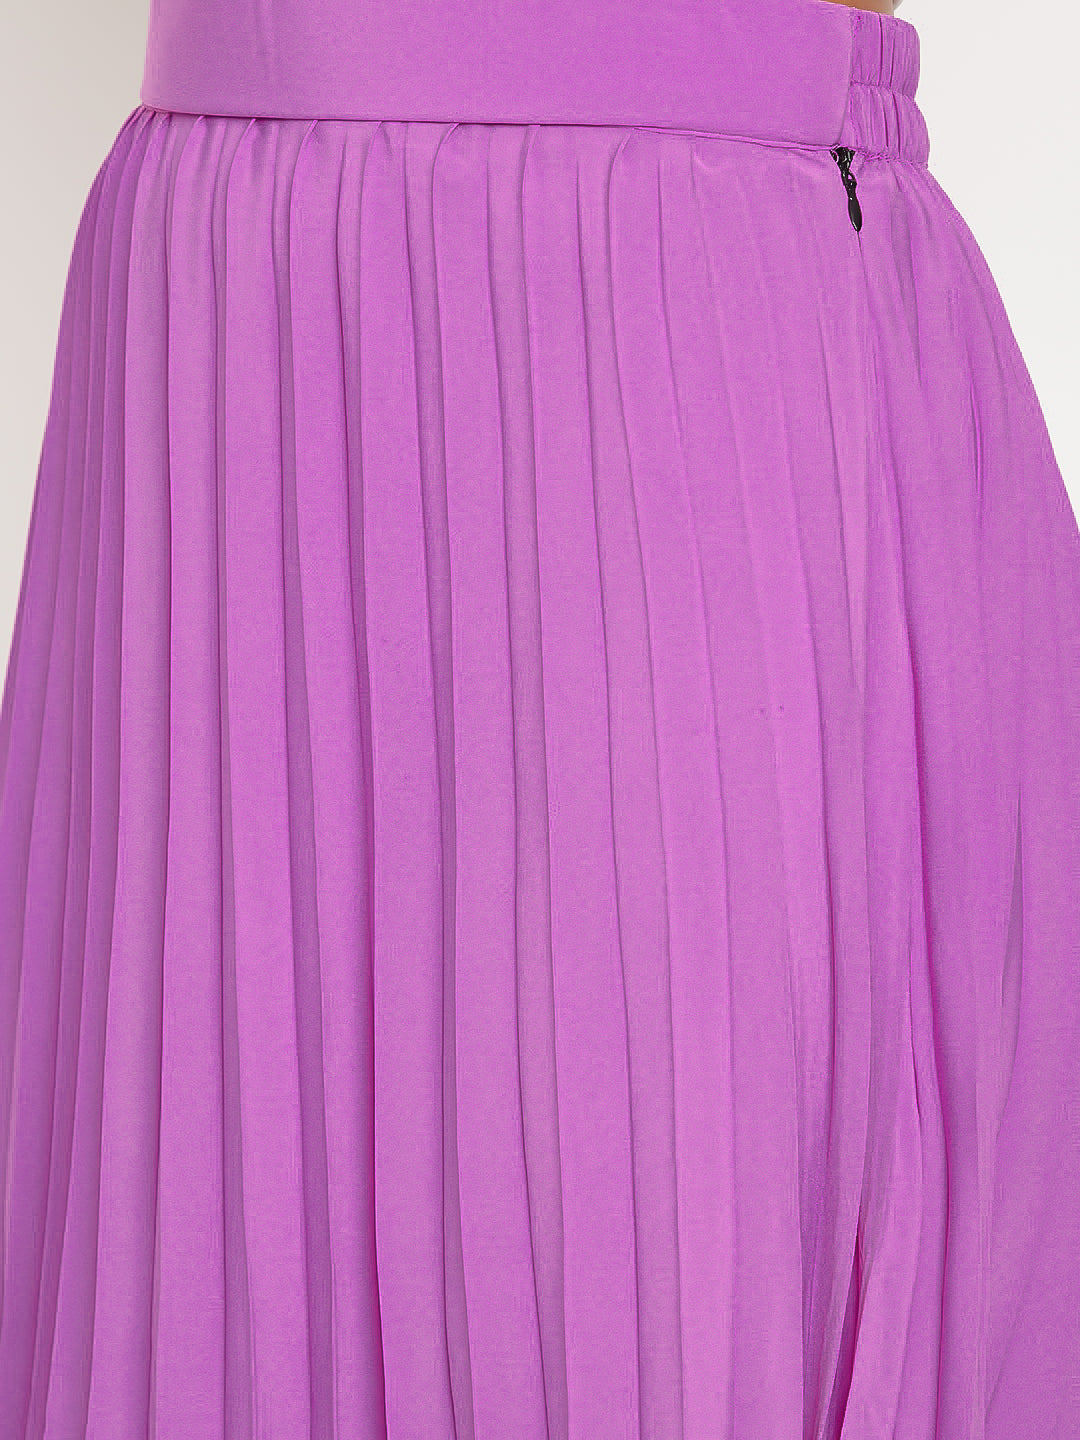 Uptownie Lite Women's Crepe Printed Pleated Skirt